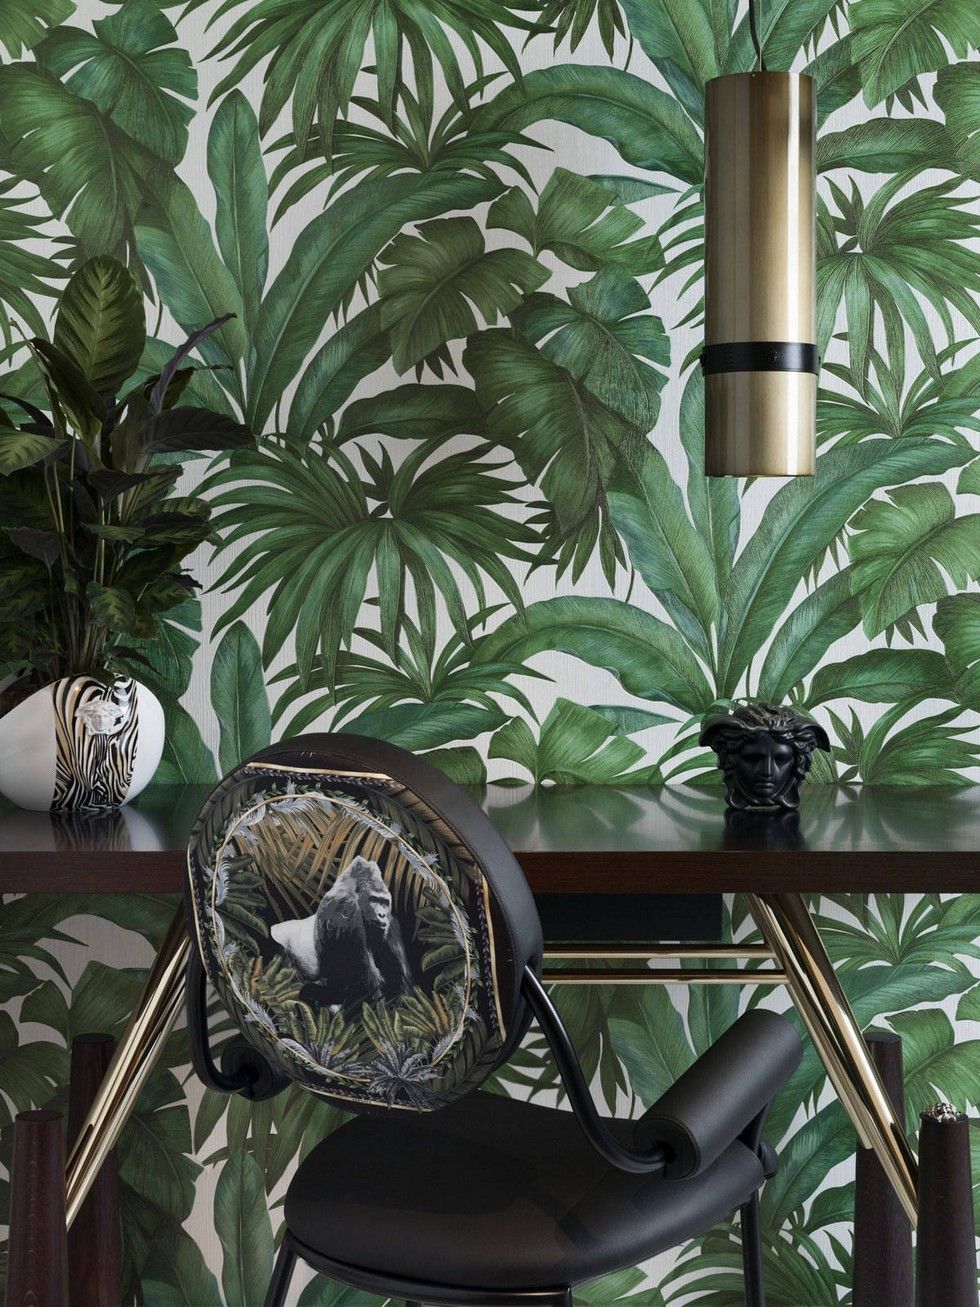 38703-2 Versace Teal Tropical Palm Leaf Gold Blue Wallpaper –  wallcoveringsmart